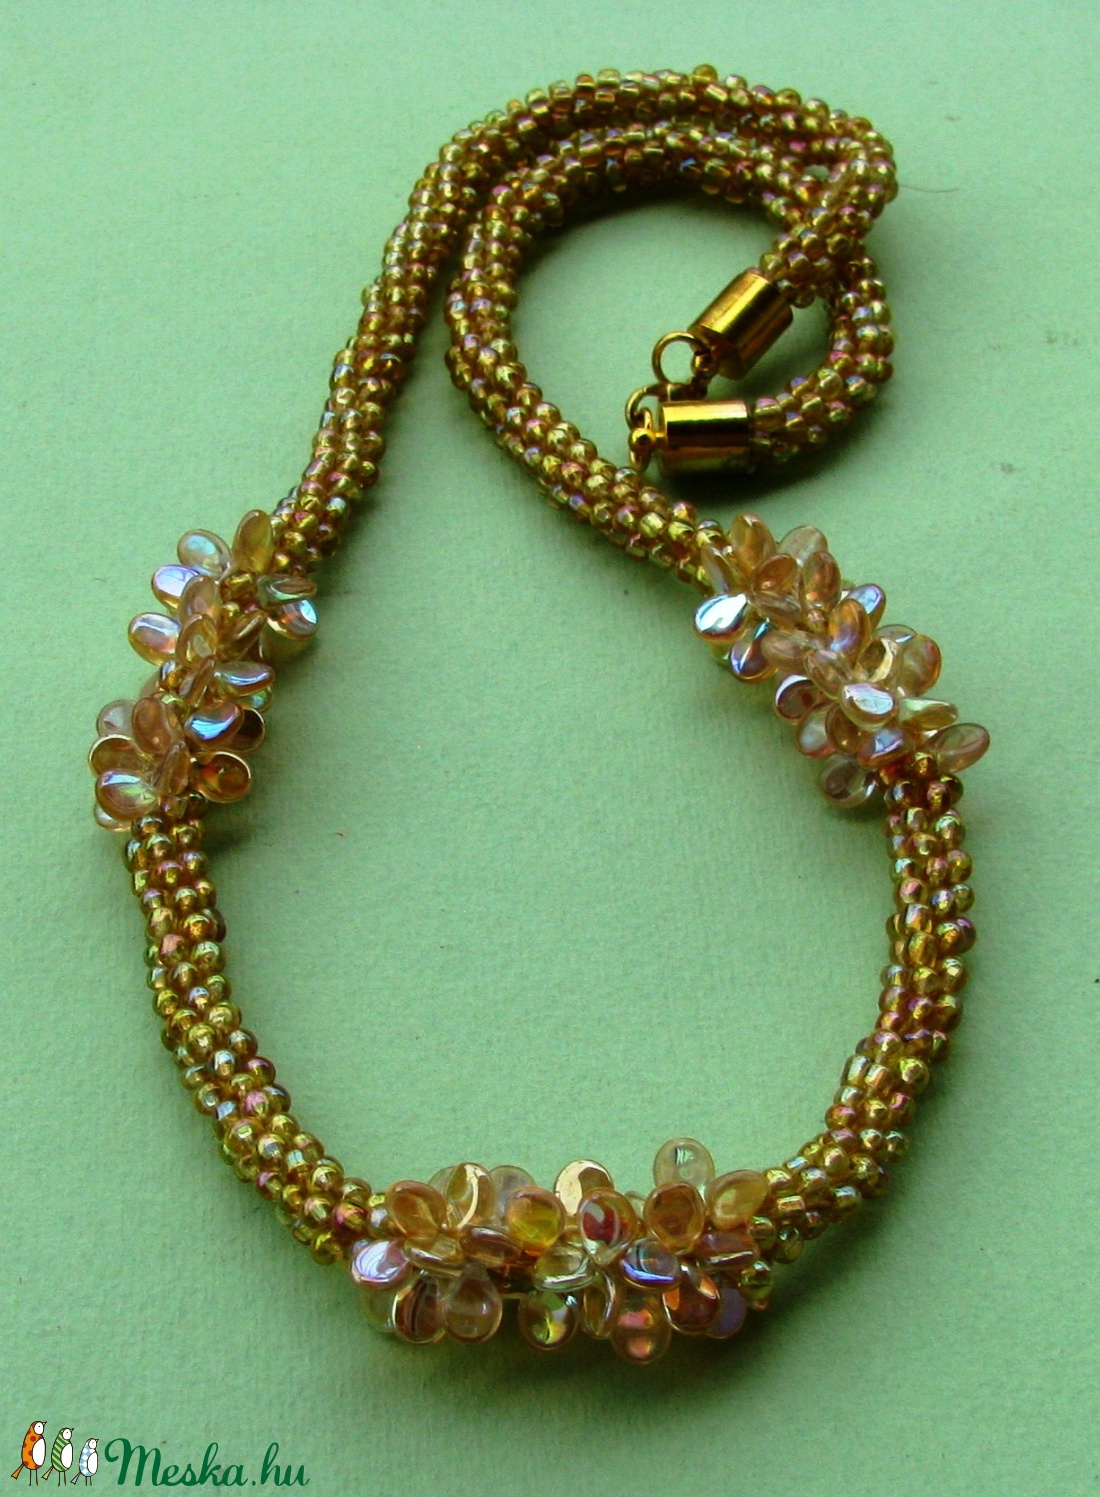 Halvány aranyszínű sziromgyöngyökkel díszített nyaklánc - ékszer - nyaklánc - statement nyaklánc - Meska.hu